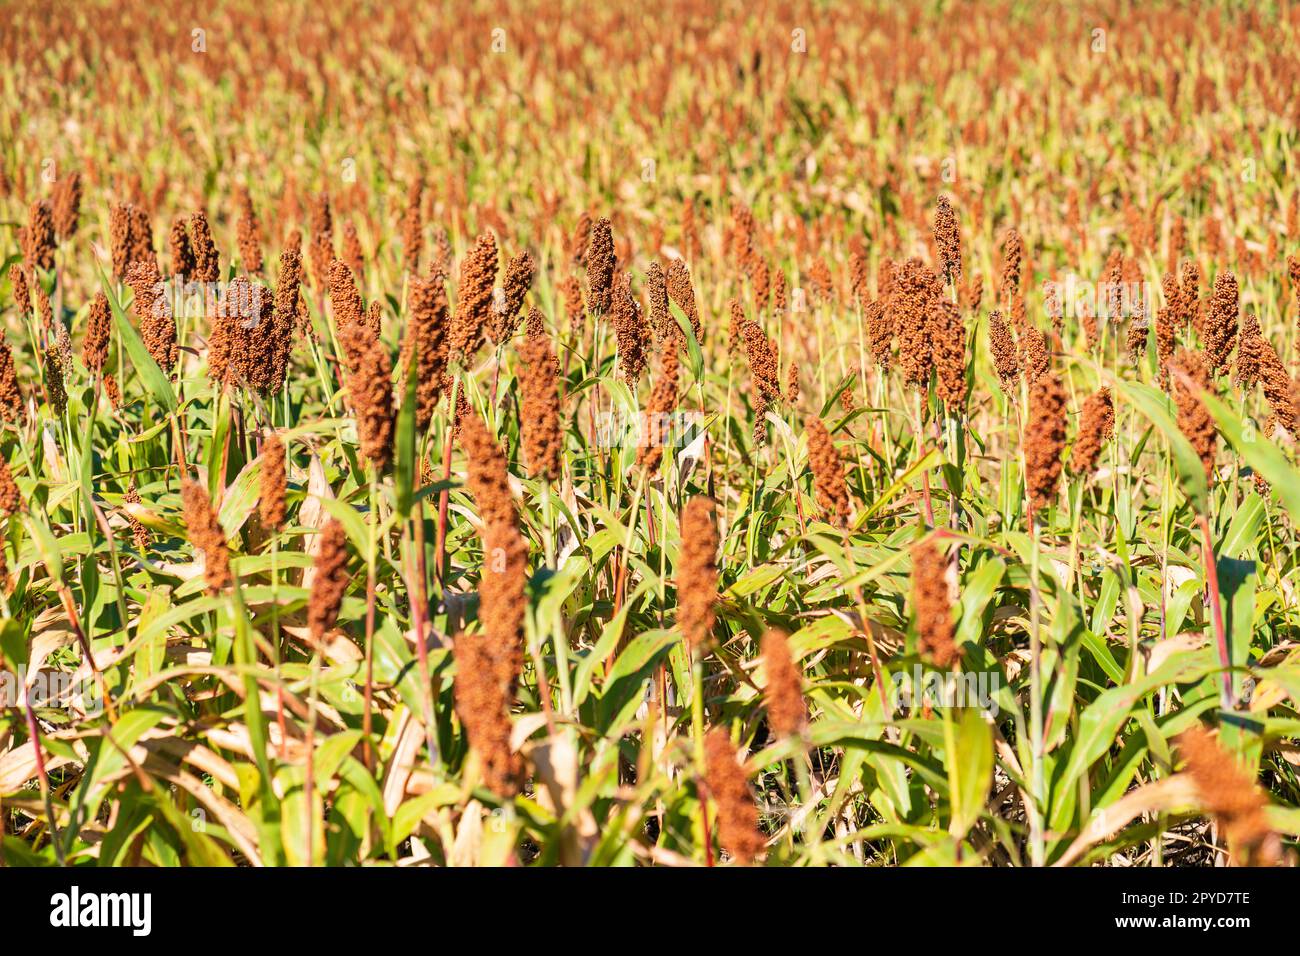 Hirse oder Sorghum eine wichtige Getreideart auf dem Feld Stockfoto